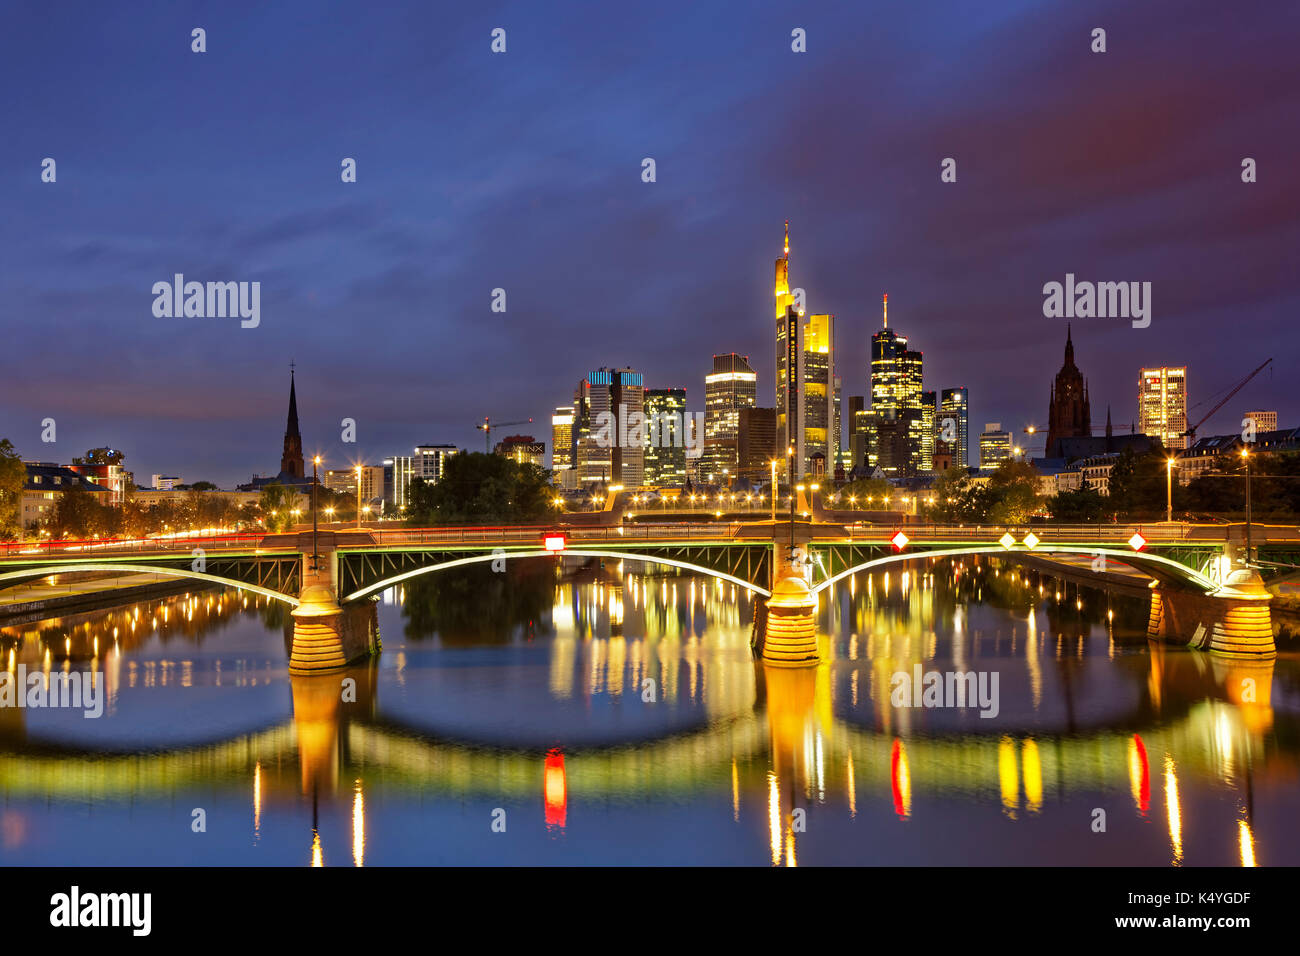 Skyline at dusk, Taunusturm, Tower 185, Commerzbank, Messeturm, Hessische Landesbank, Deutsche Bank, Frankfurt Cathedral Stock Photo